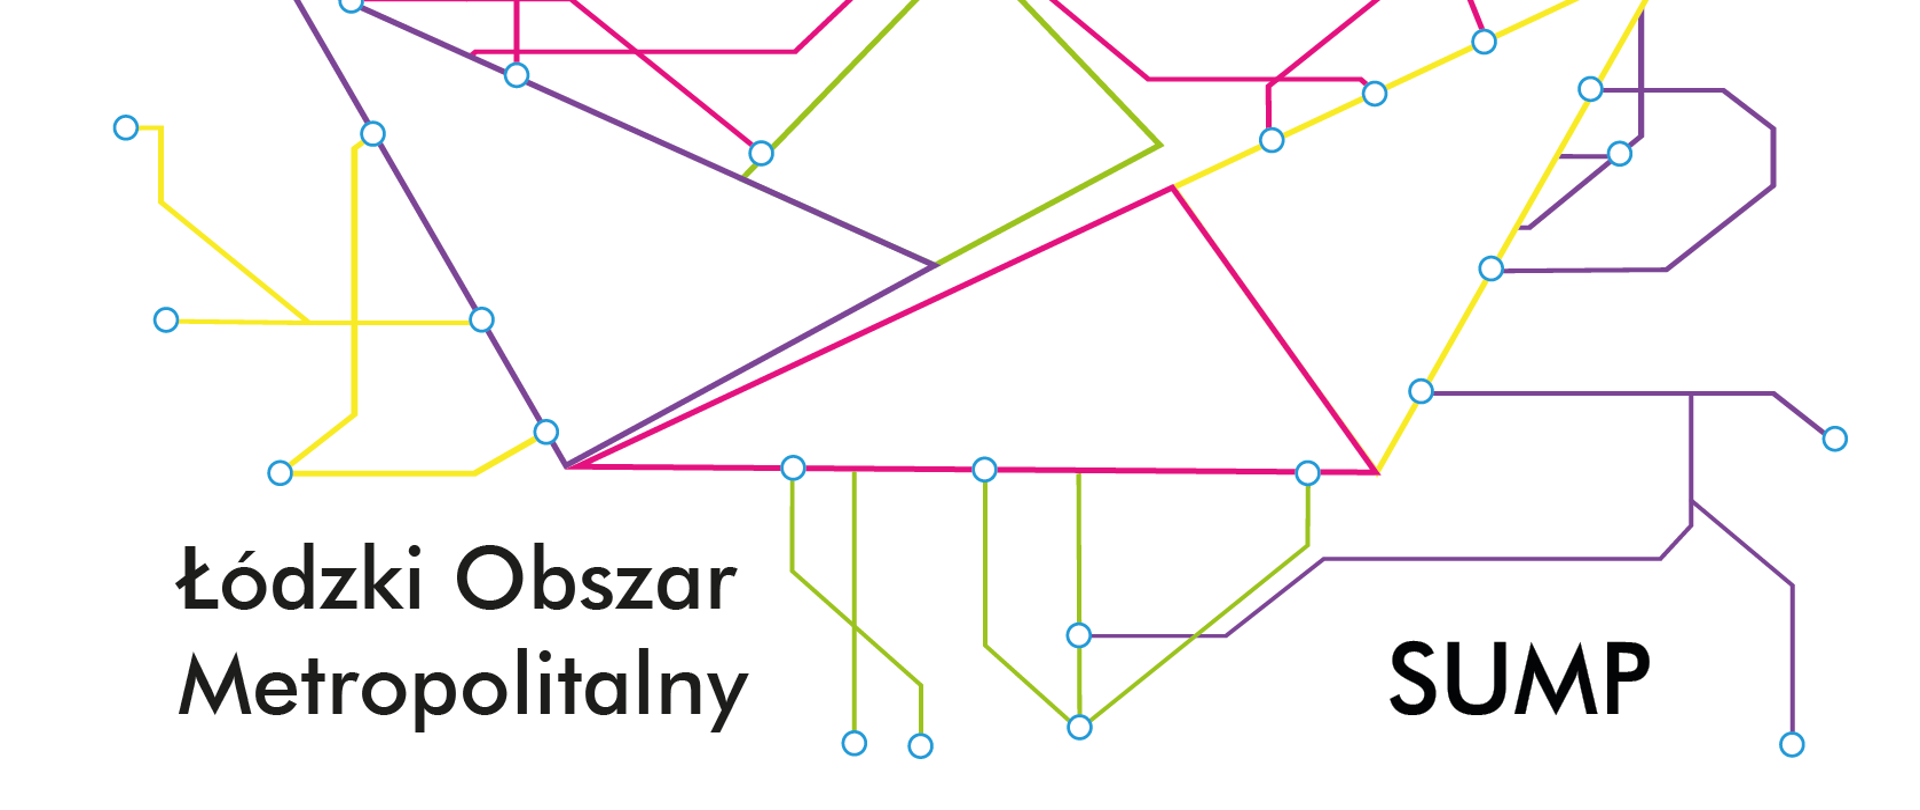 Logo, sieć komunikacyjna Łódzkiego Obszaru Metropolitalnego